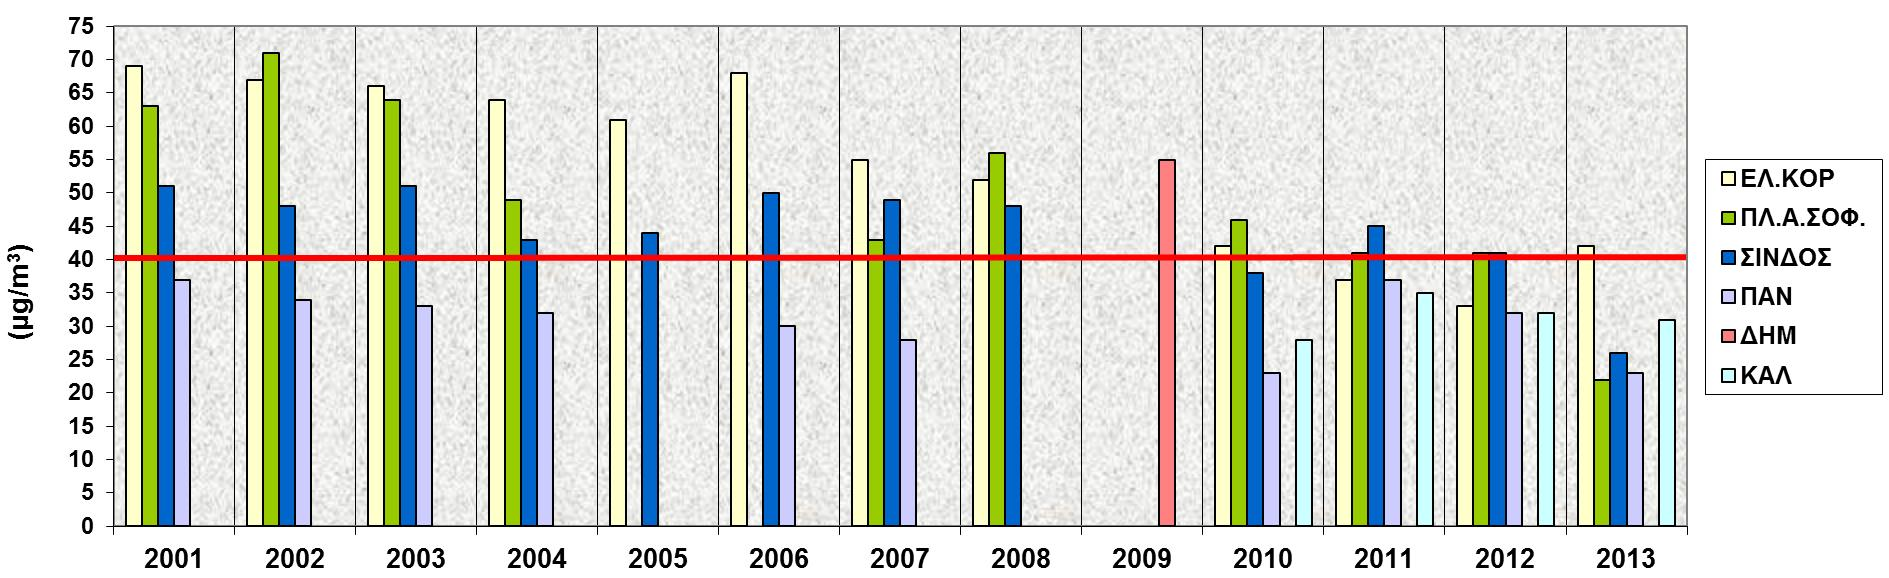 ΑΣ 10 στη Θεσσαλονίκη, εξέλιξη 2001-2013 2001-2011: τάση σταθεροποίησης σε επίπεδα πάνω από το όριο της ΕΕ, κυρίως στους αστικούς σταθμούς κυκλοφορίας (Πλ.Αγ.Σοφίας) και βιομηχανικούς (Σίνδος).